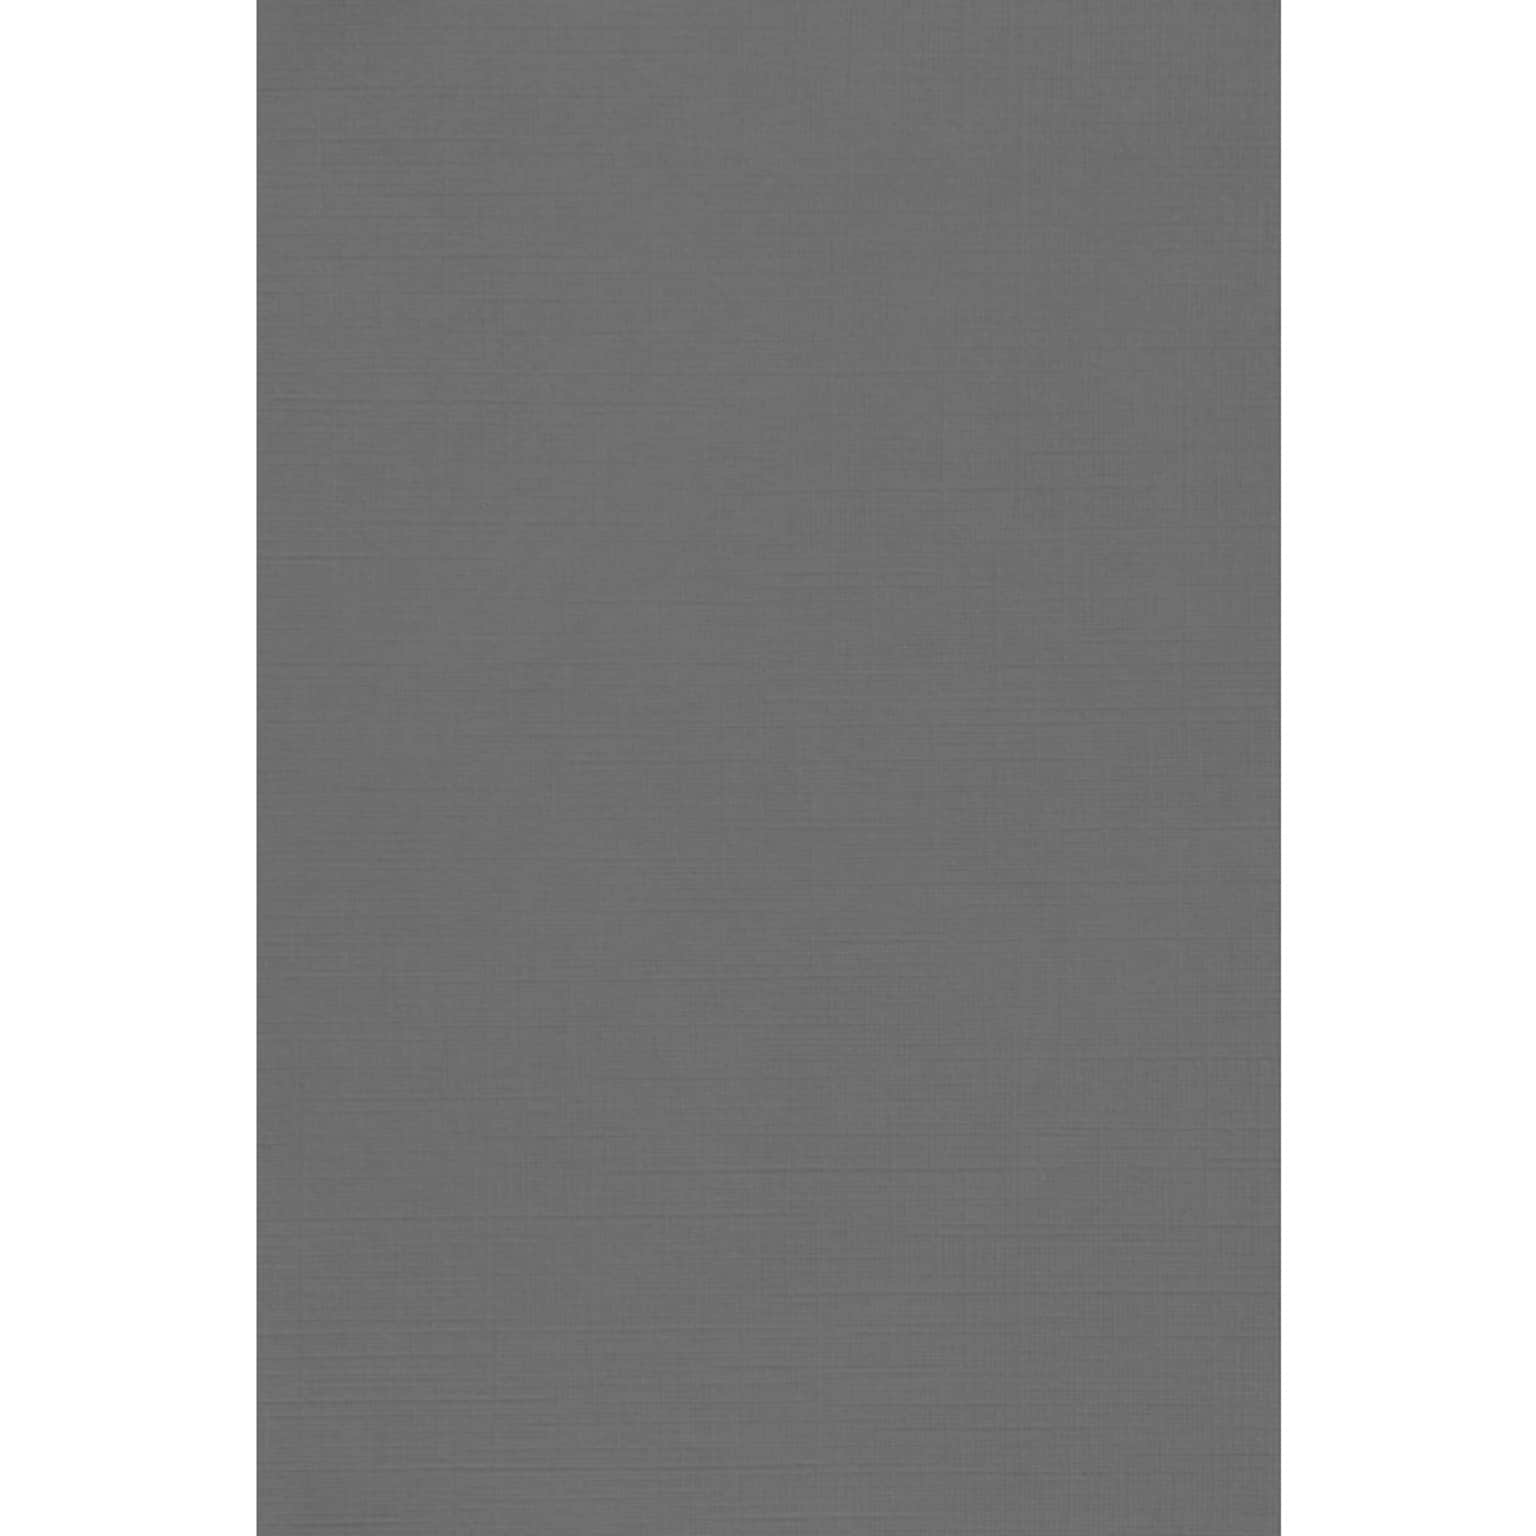 JAM PAPER 12 x 18 Cardstock, Sterling Gray Linen, 50/pack  (1218-C-GRLI-50)